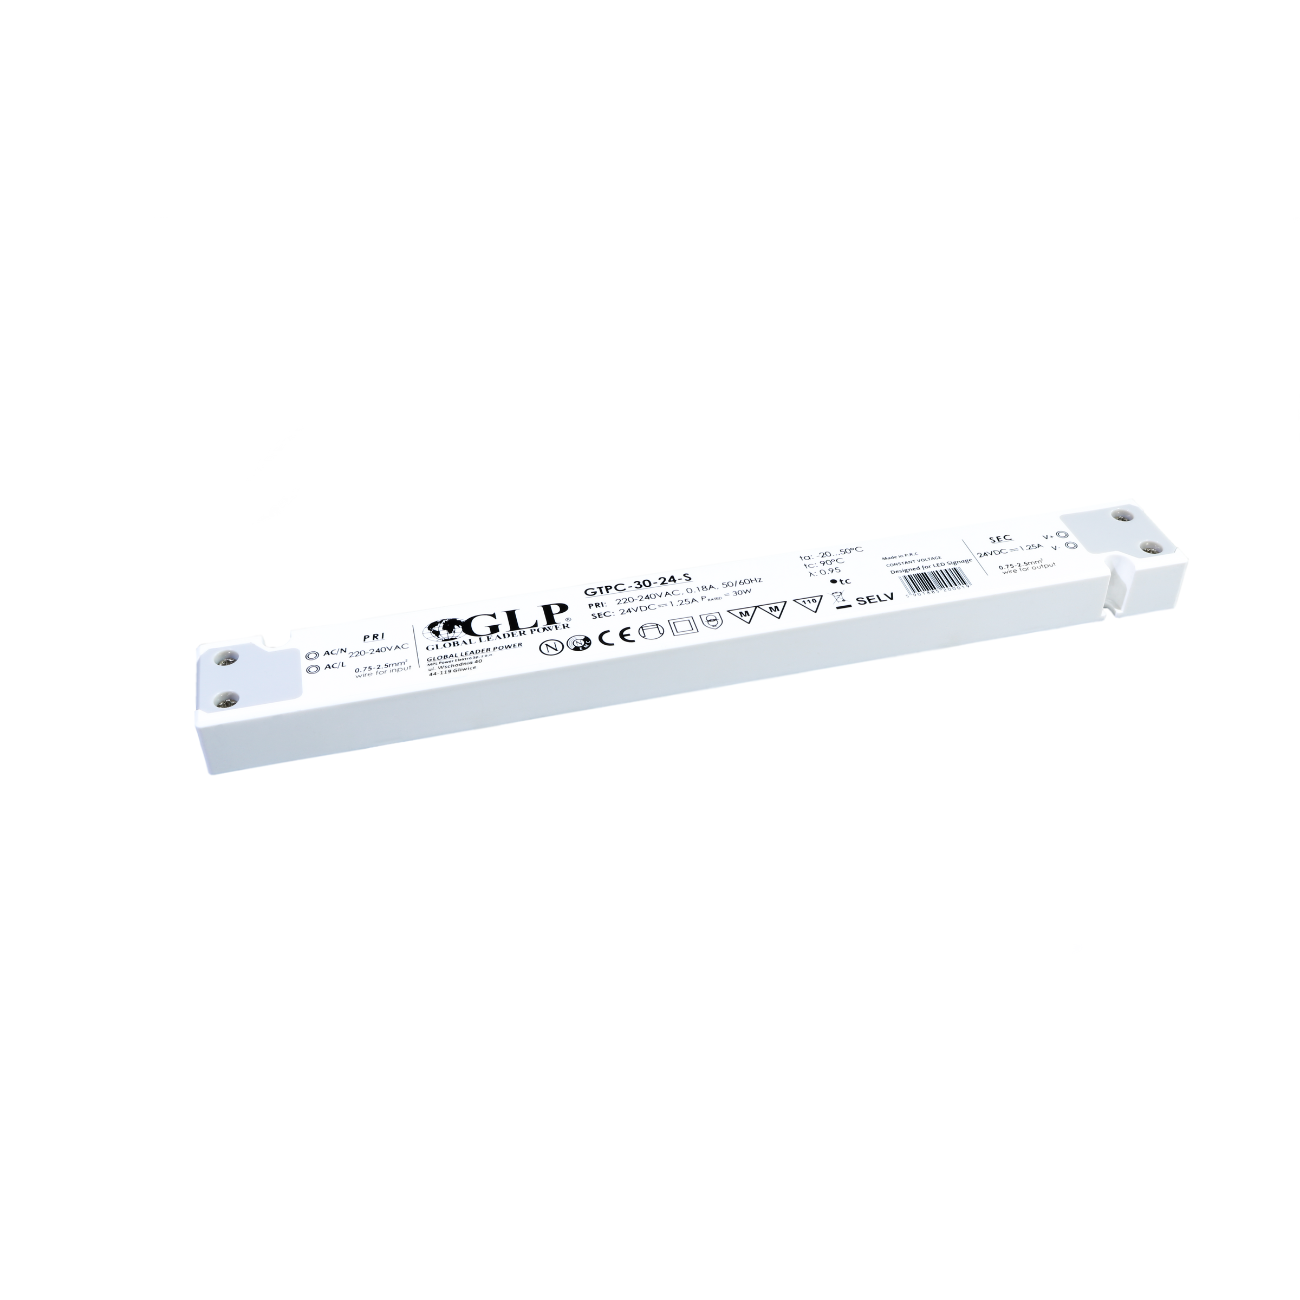 GTPC-30-12-S (30W/12V) LED-Netzteil (slim)